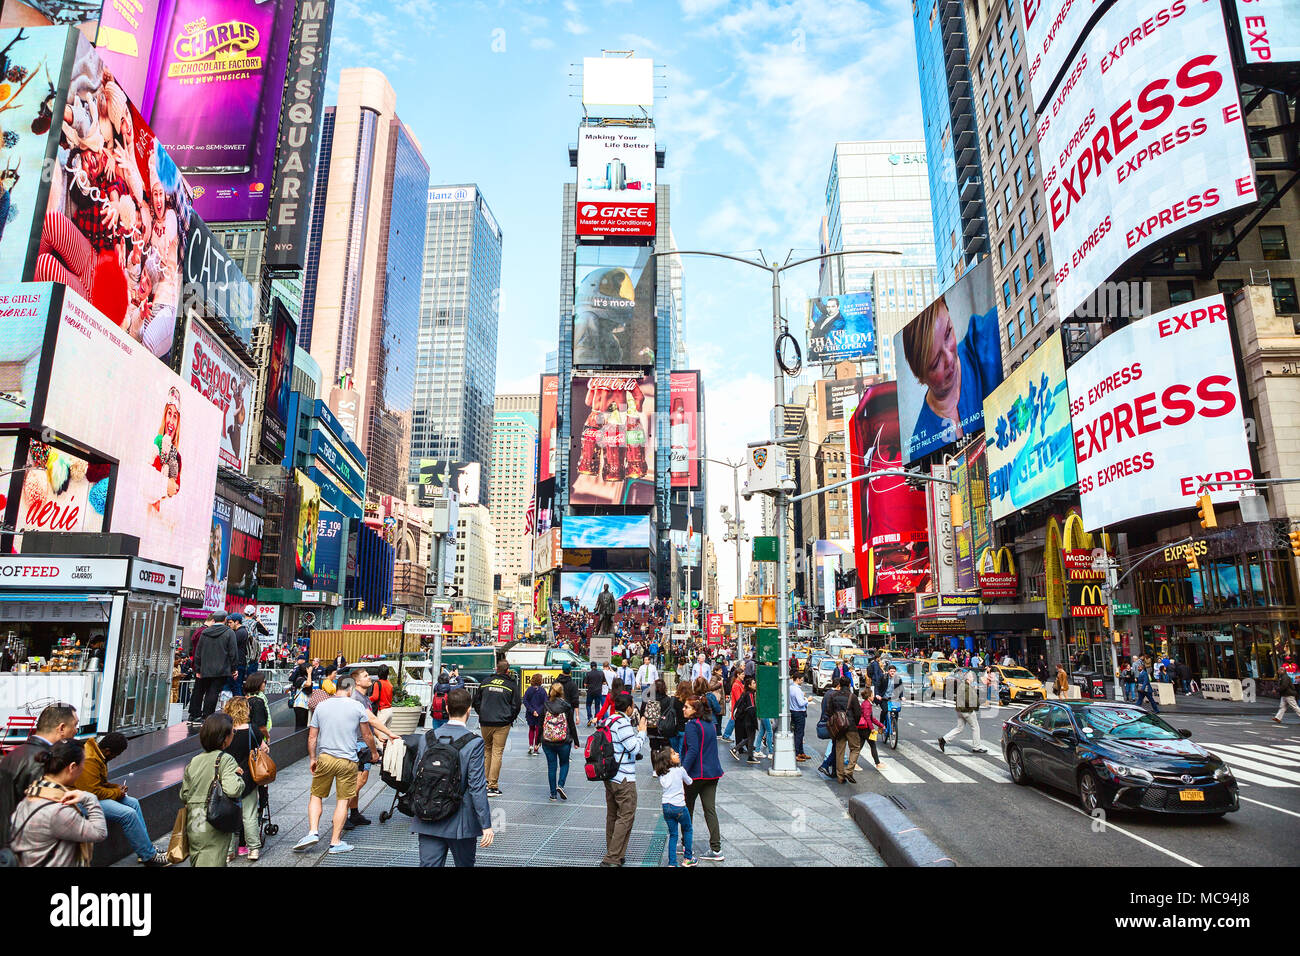 La Ciudad de Nueva York, Estados Unidos - 2 de noviembre de 2017: La vida de la ciudad en Times Square en el día. Foto de stock